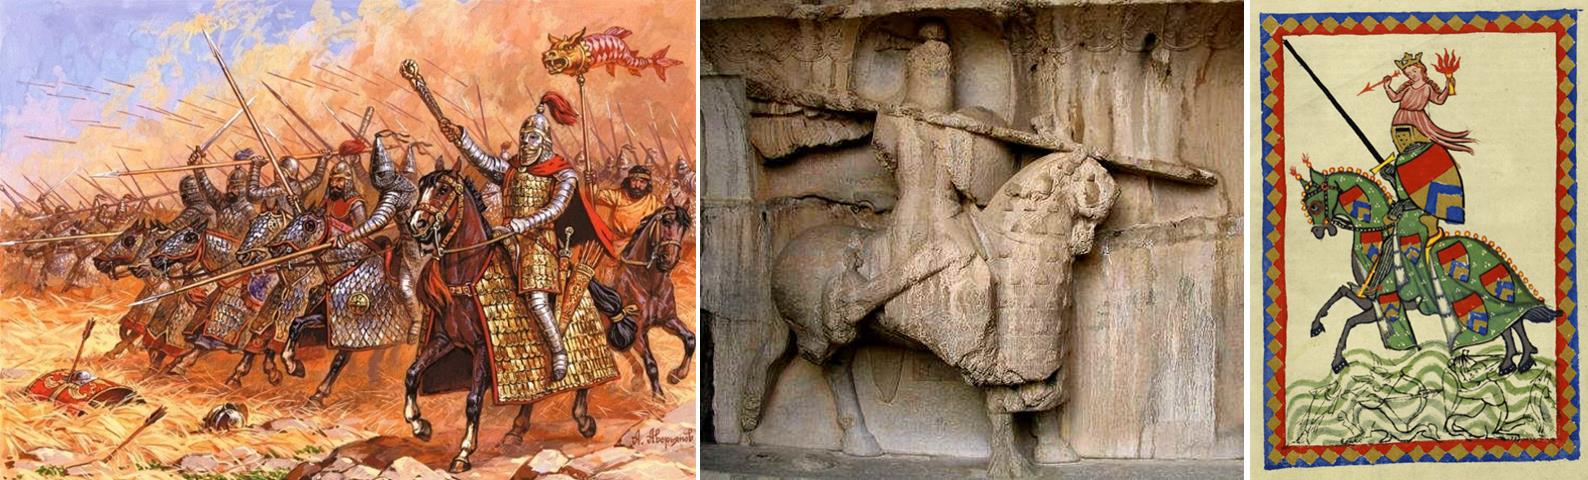 Obr.2. Vlevo: útok katafraktů, v pozadí sarmatská dračí standarta. Uprostřed: perský katafrakt z počátku 7. století n.l. Vpravo: středověký rytíř.